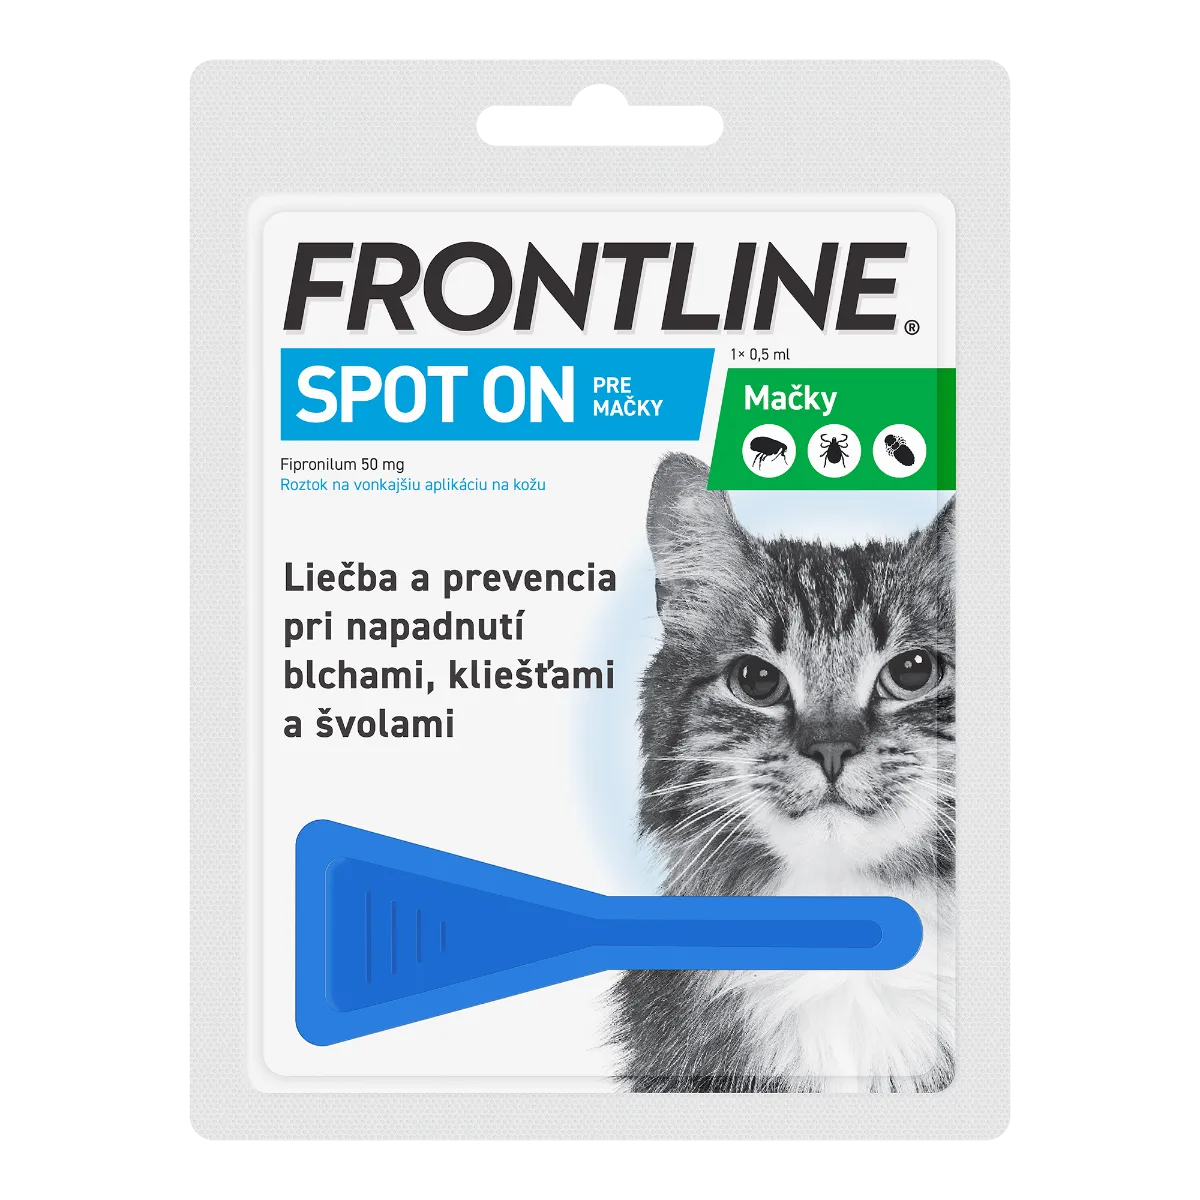 FRONTLINE spot-on pre mačky 